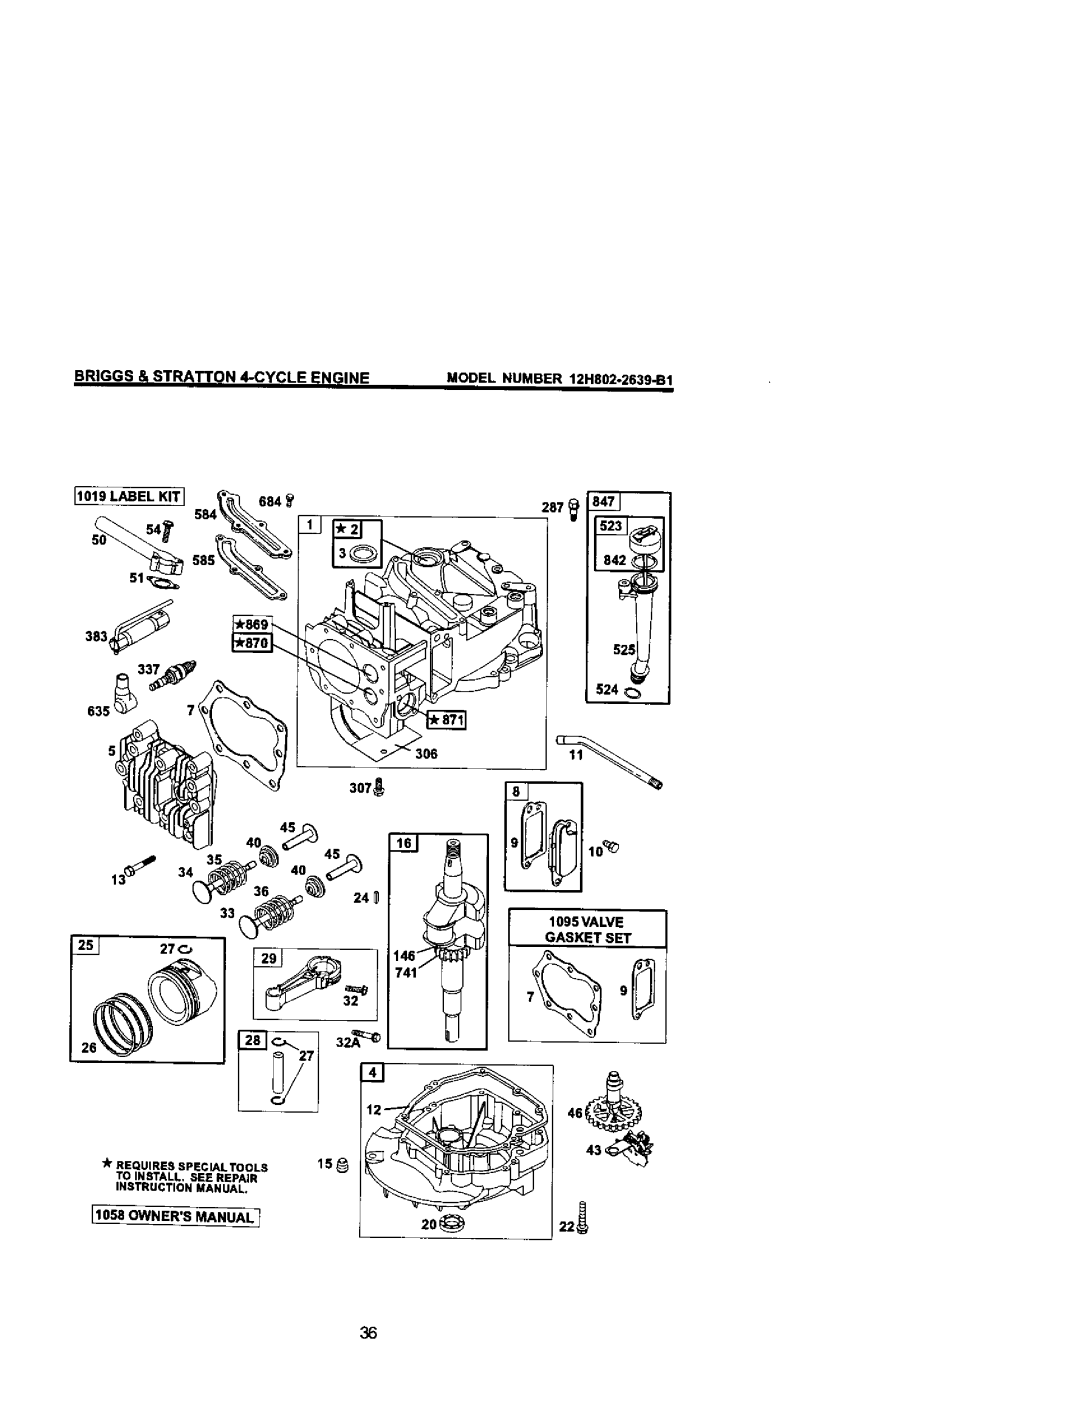 Craftsman 38872 owner manual MODEL NUMBER 12HS02-2639-B1, Label Kit, 383, 635, 525! J 524 1895VALVE, Gasket Set 